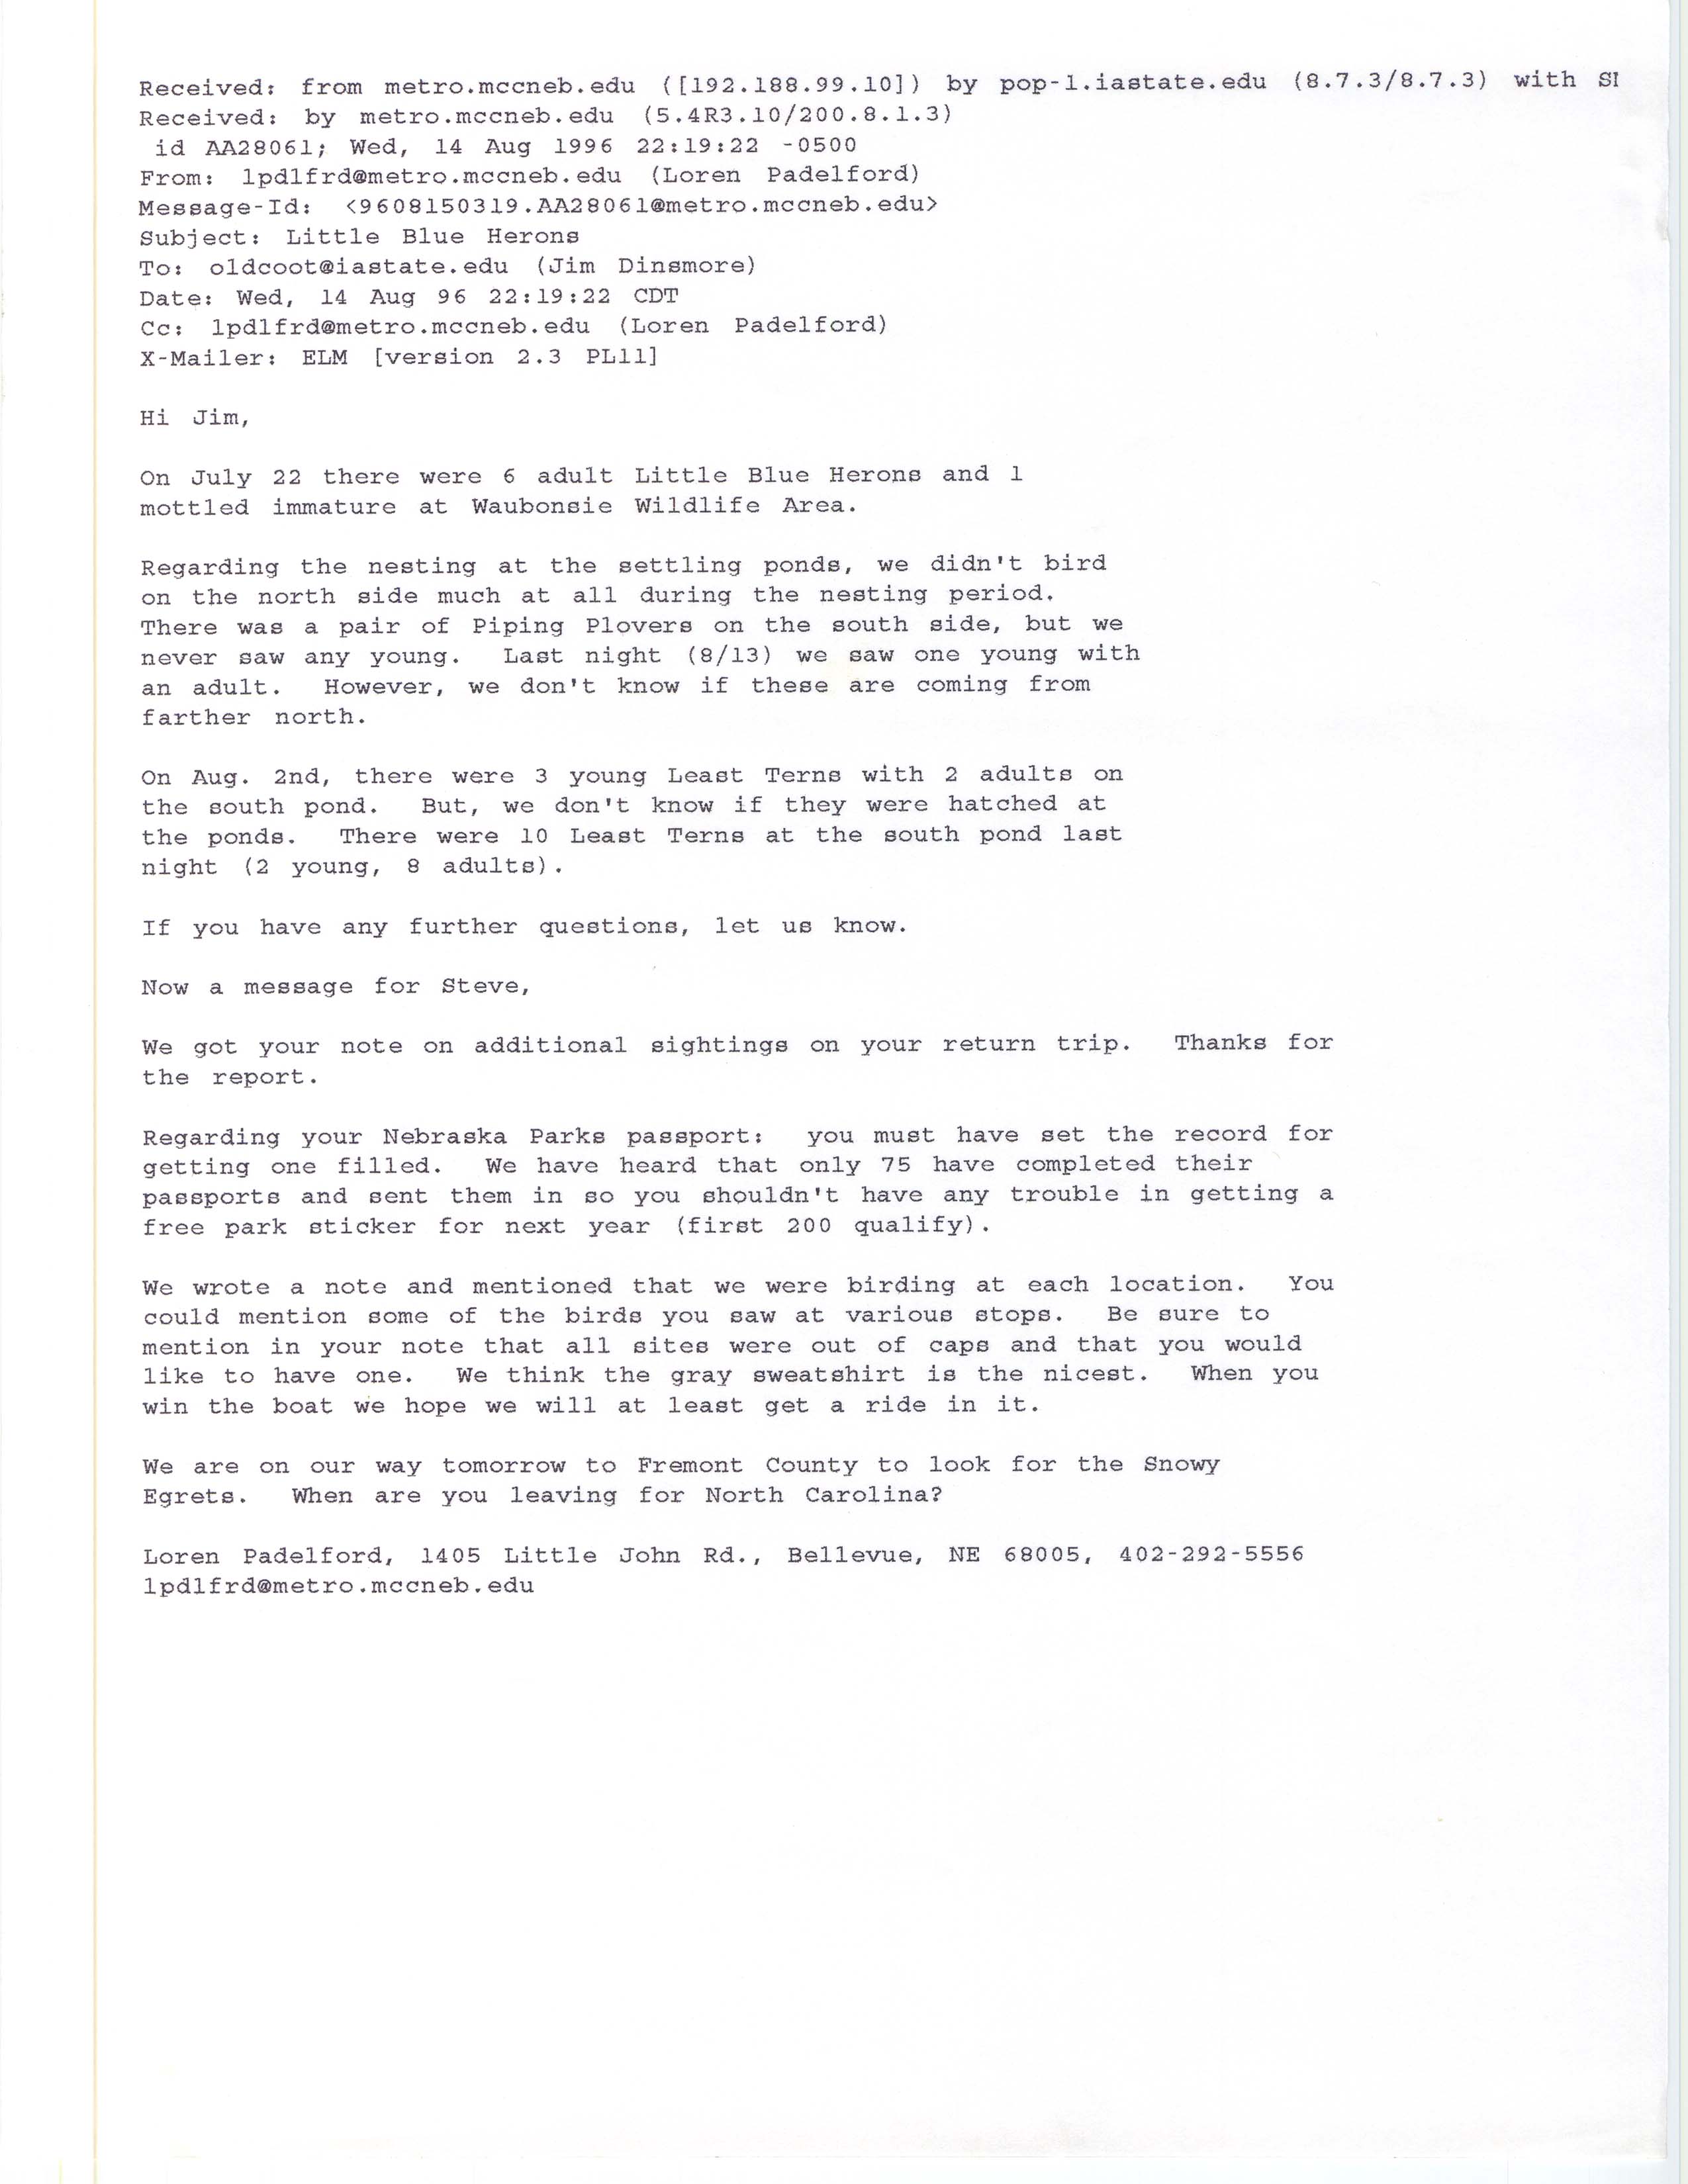 Loren Padelford email to James J. Dinsmore regarding bird sightings, August 14, 1996